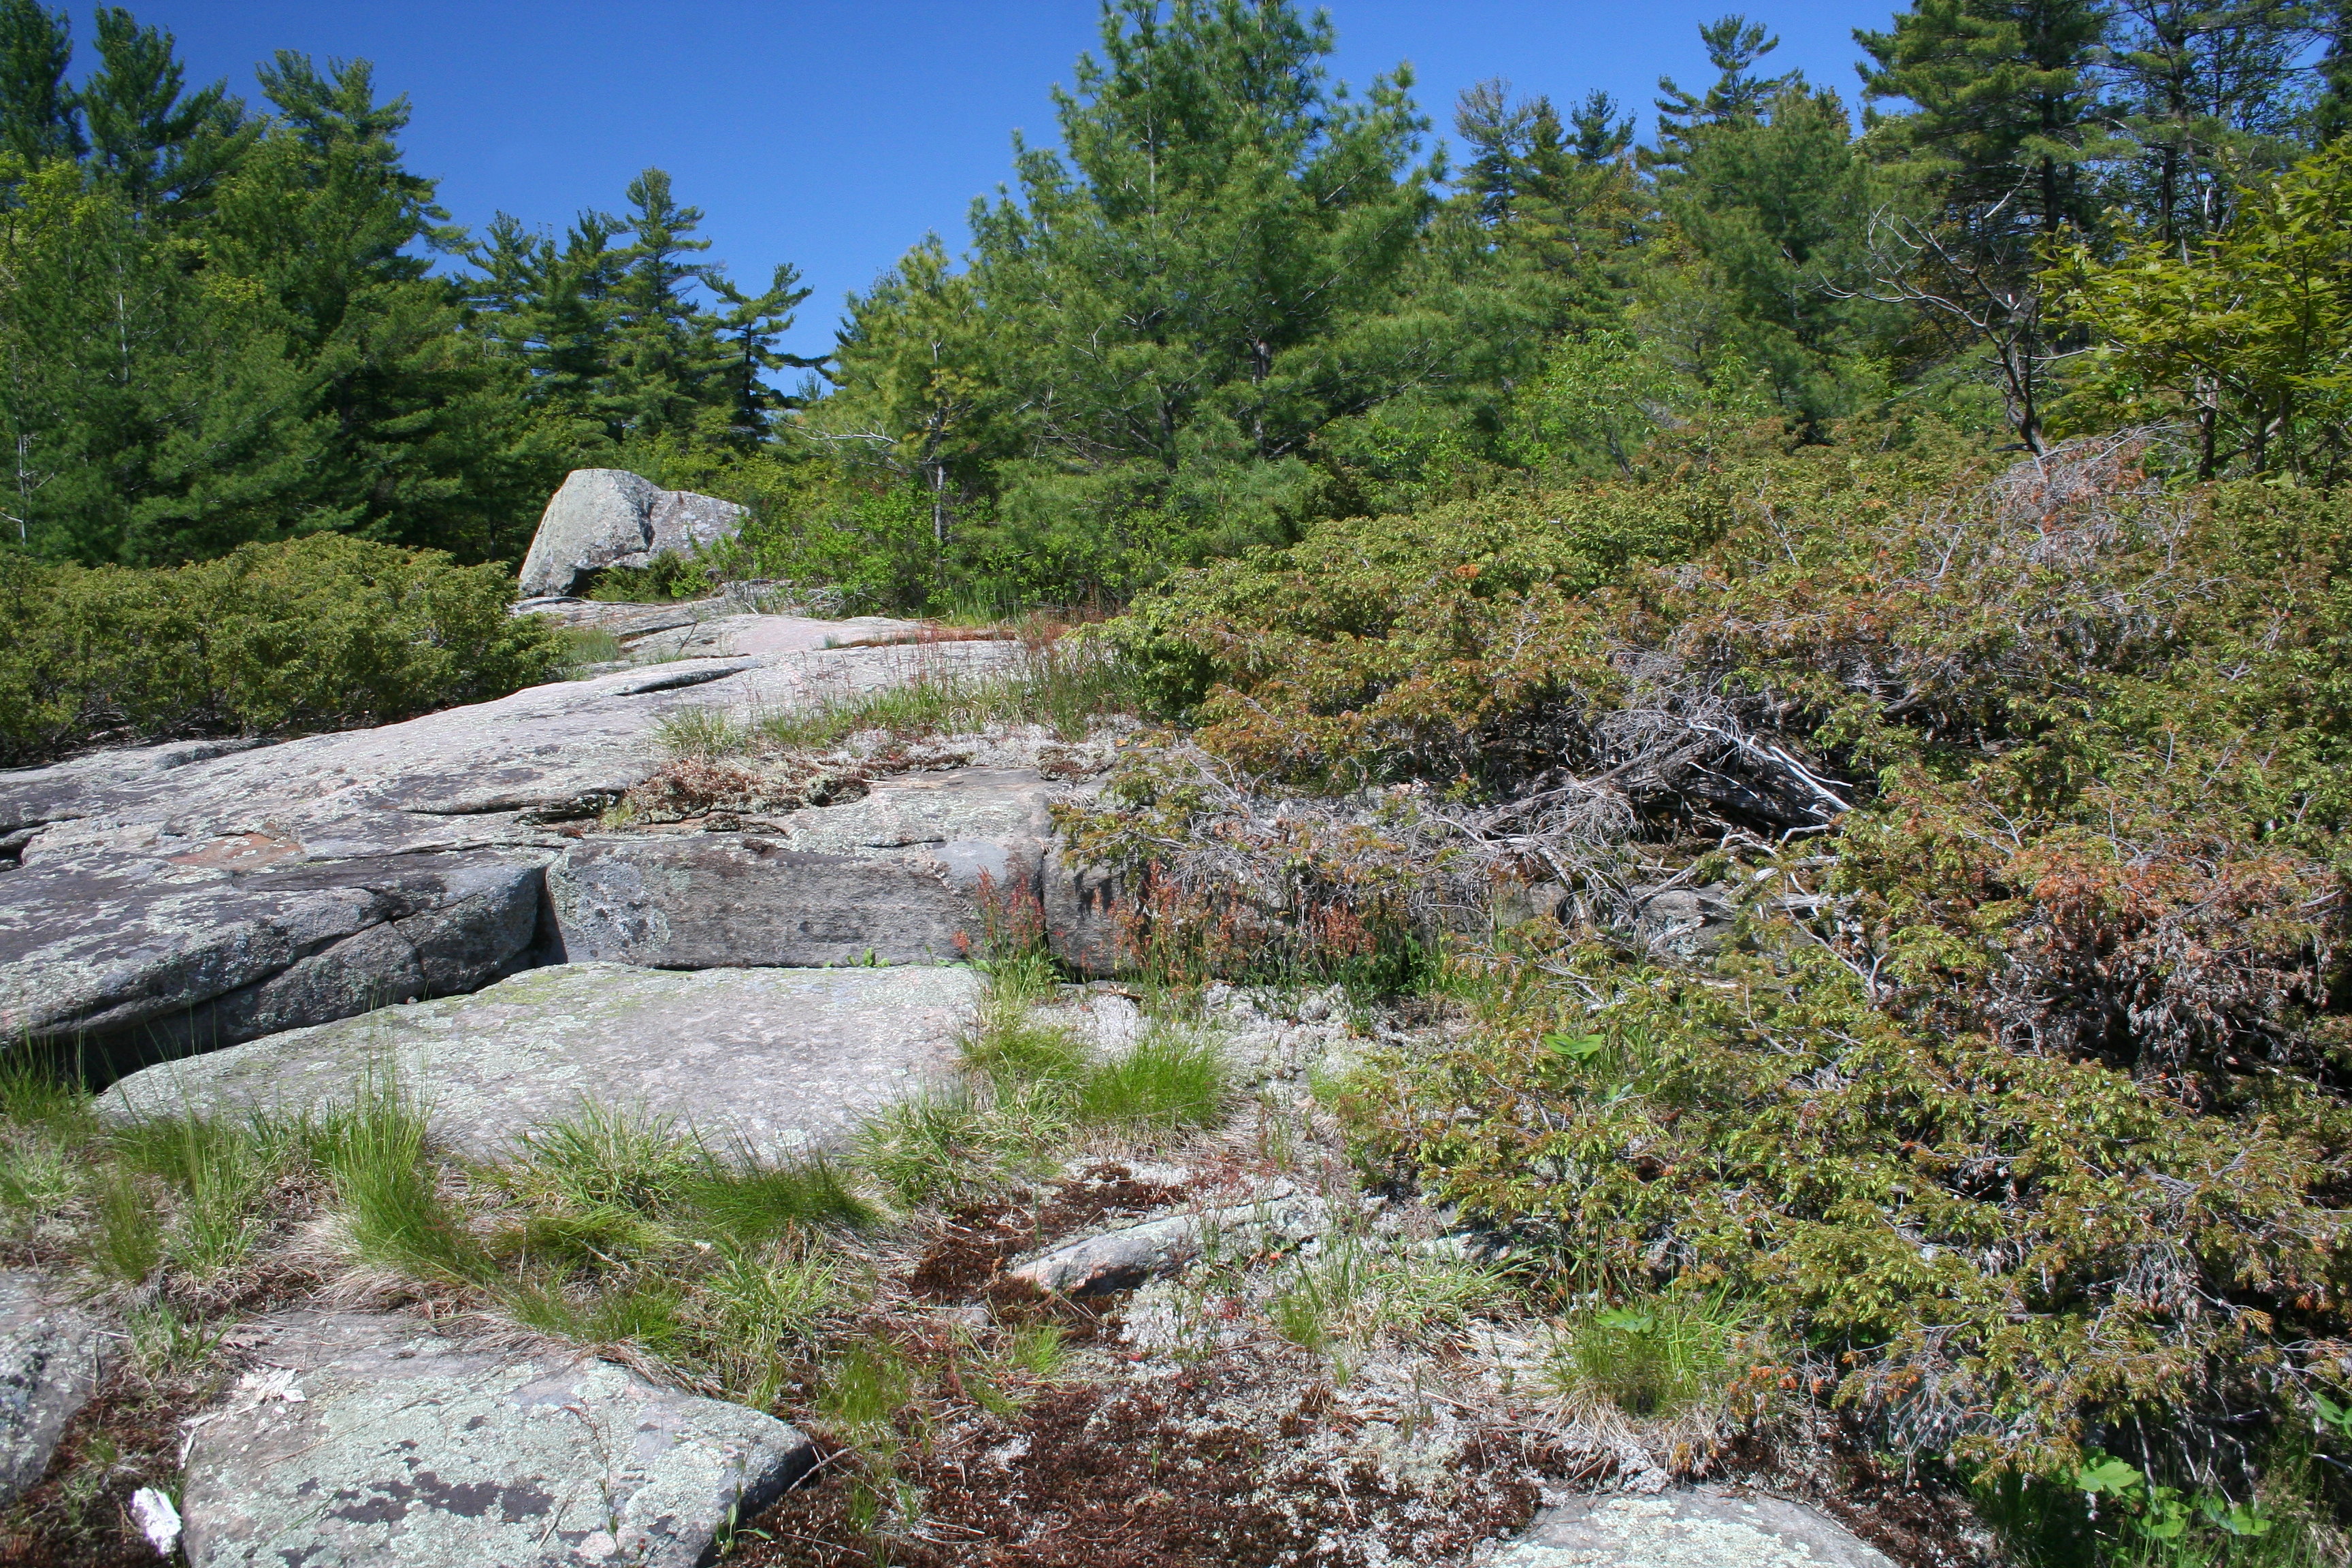 Photographie d’un paysage rocheux du Bouclier canadien habité par des espèces en péril comme le scinque pentaligne, la couleuvre fauve de l’Est et la couleuvre obscure